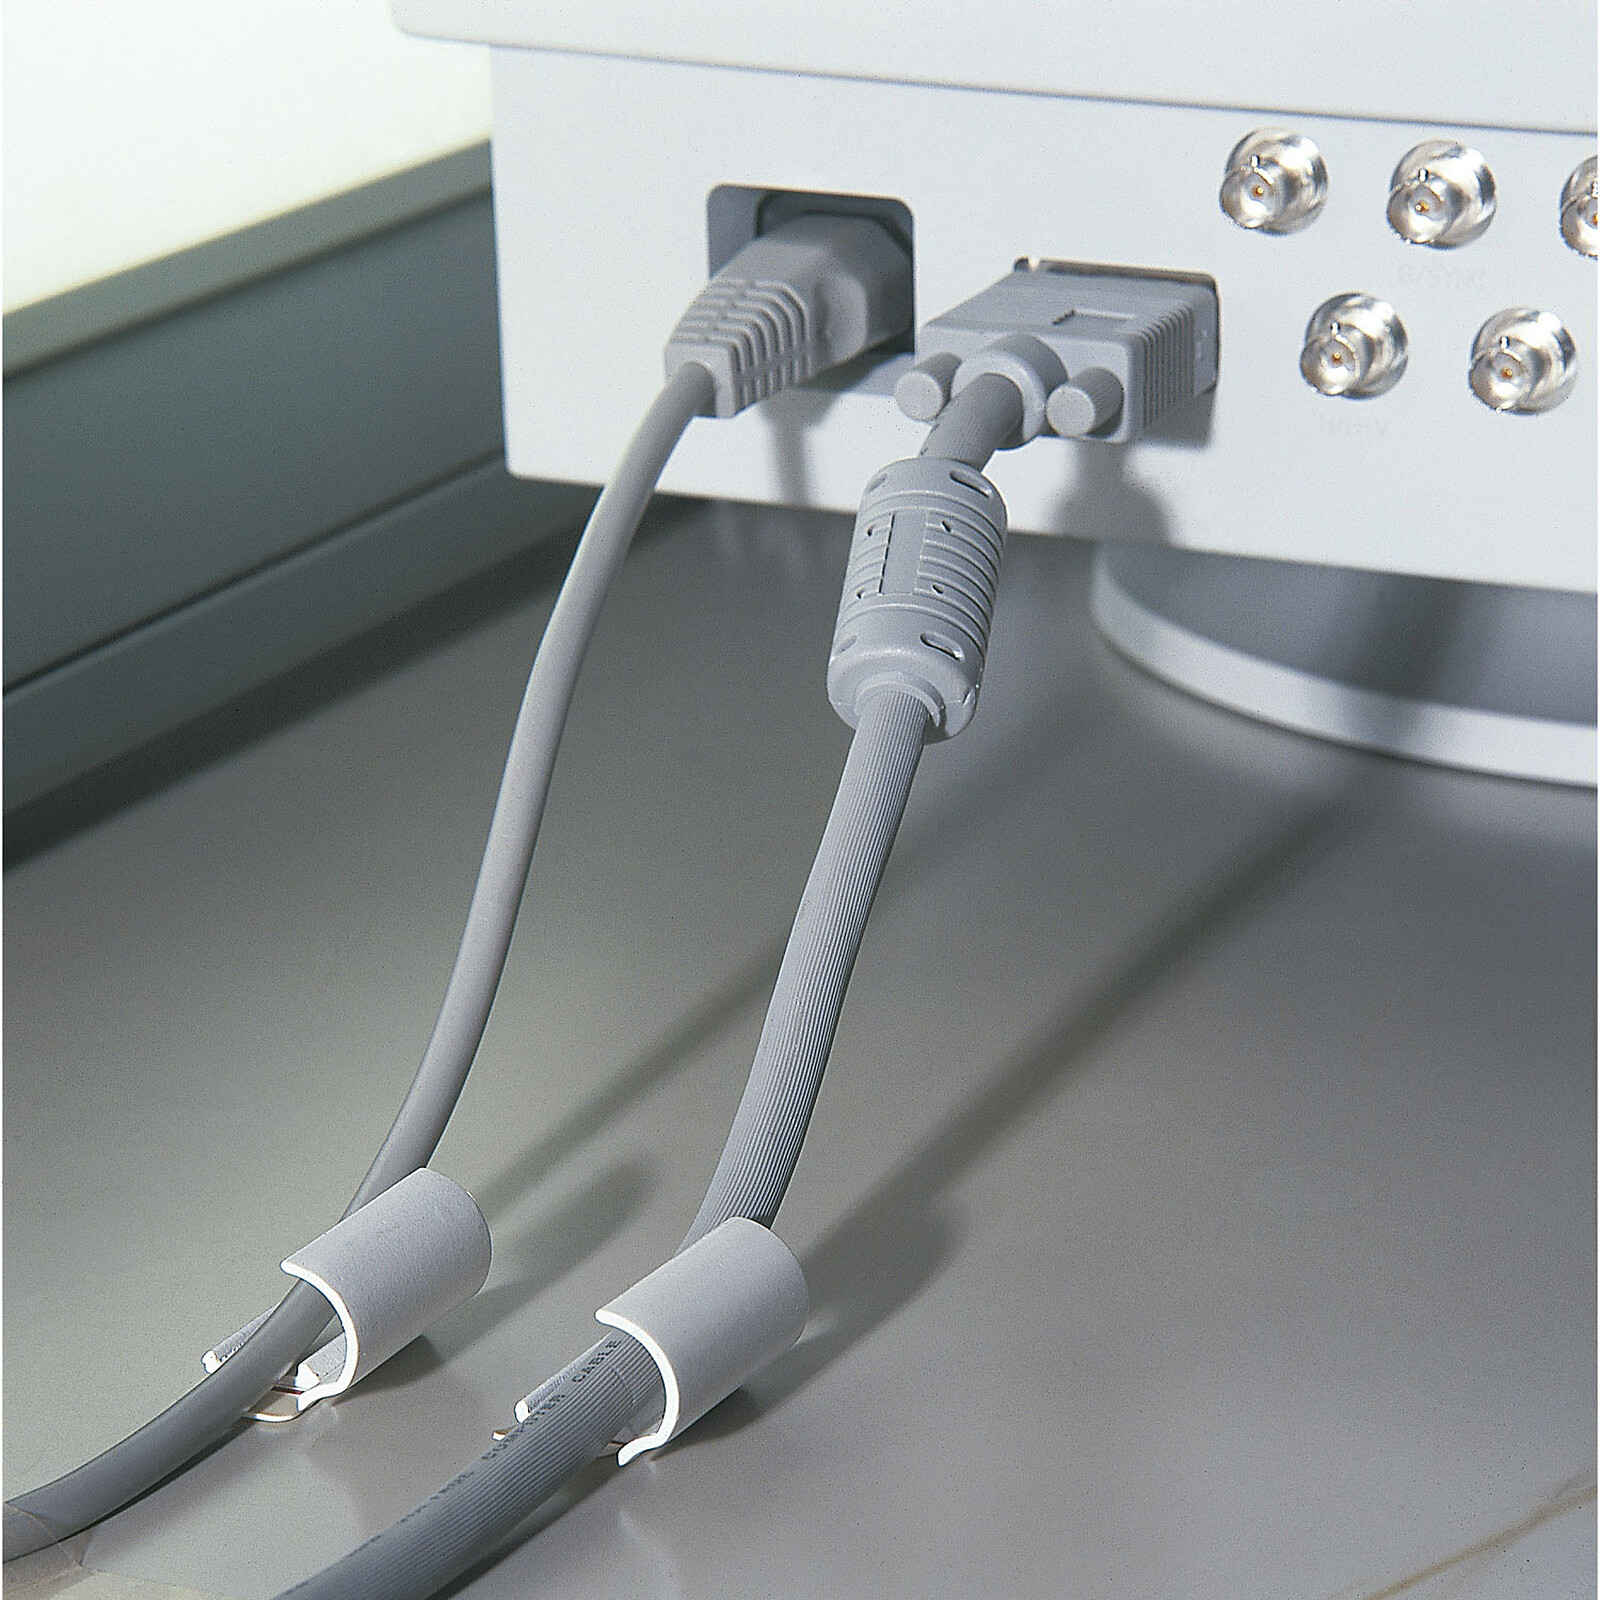 Recubrimiento de alta calidad para ordenar cables - diámetro 20 mm máx. -  longitud 2.5 m (color gris) - Pasacables - LDLC